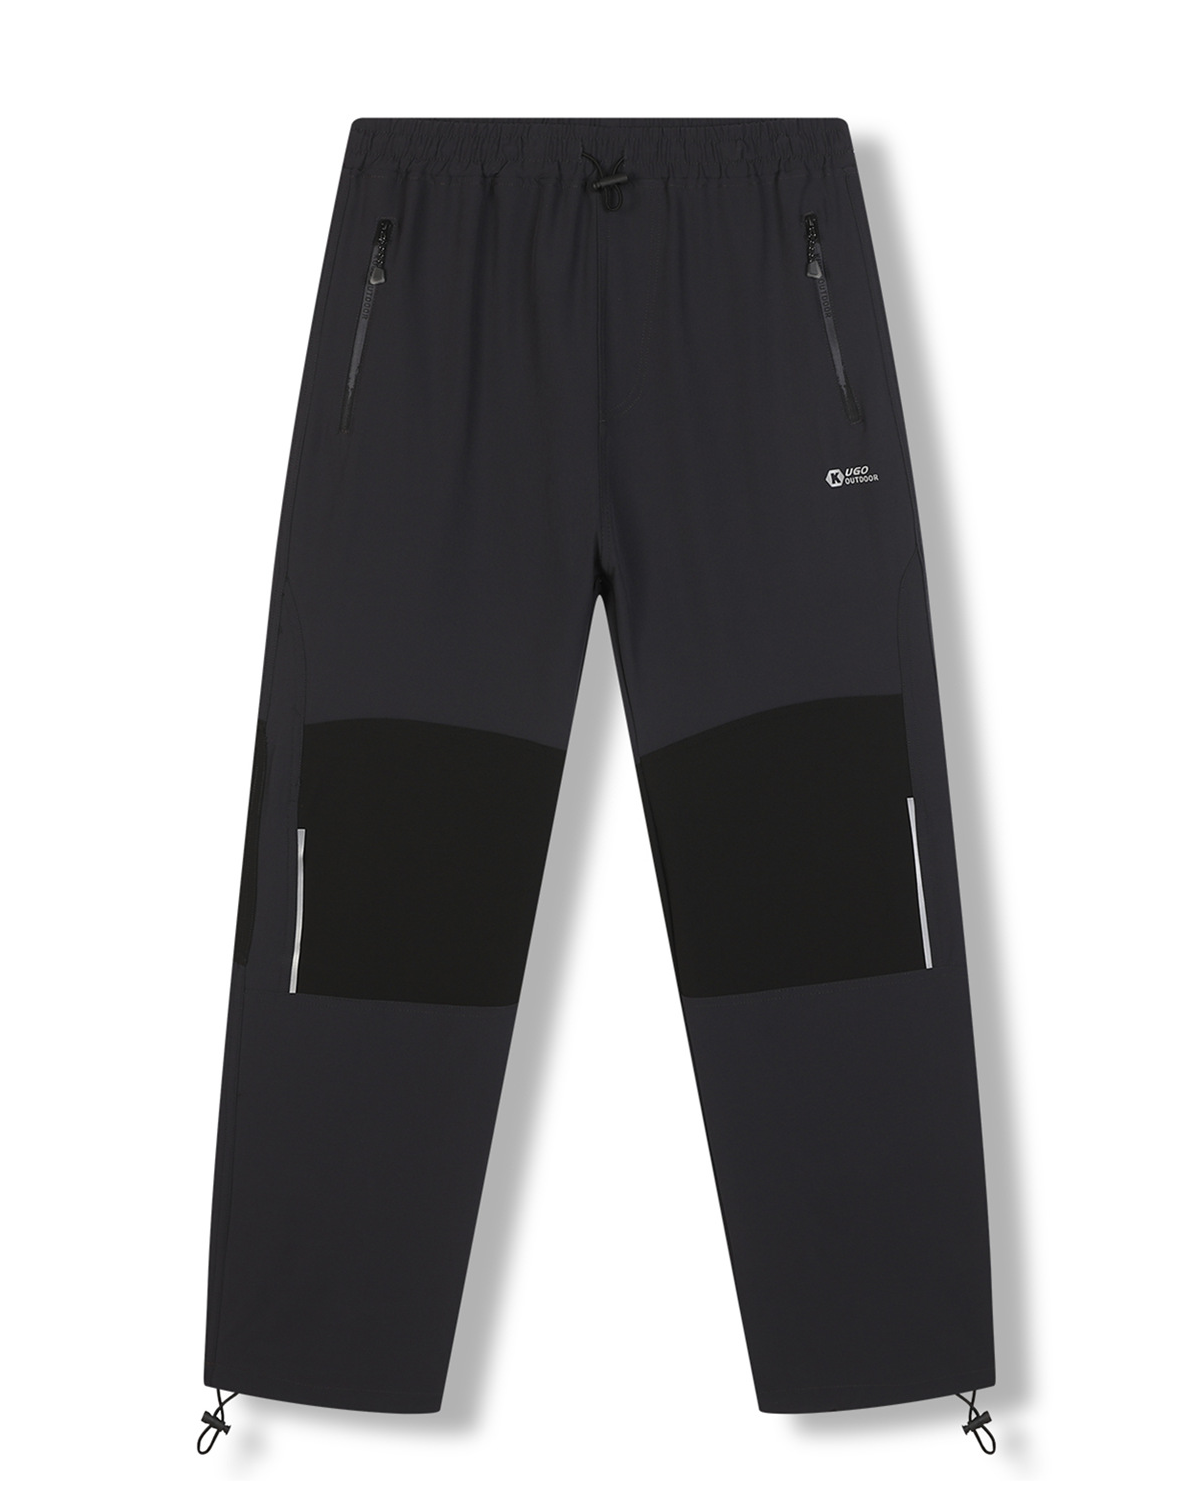 Pánské softshellové kalhoty - KUGO HK7587, tmavě šedá / černá kolena Barva: Šedá, Velikost: L